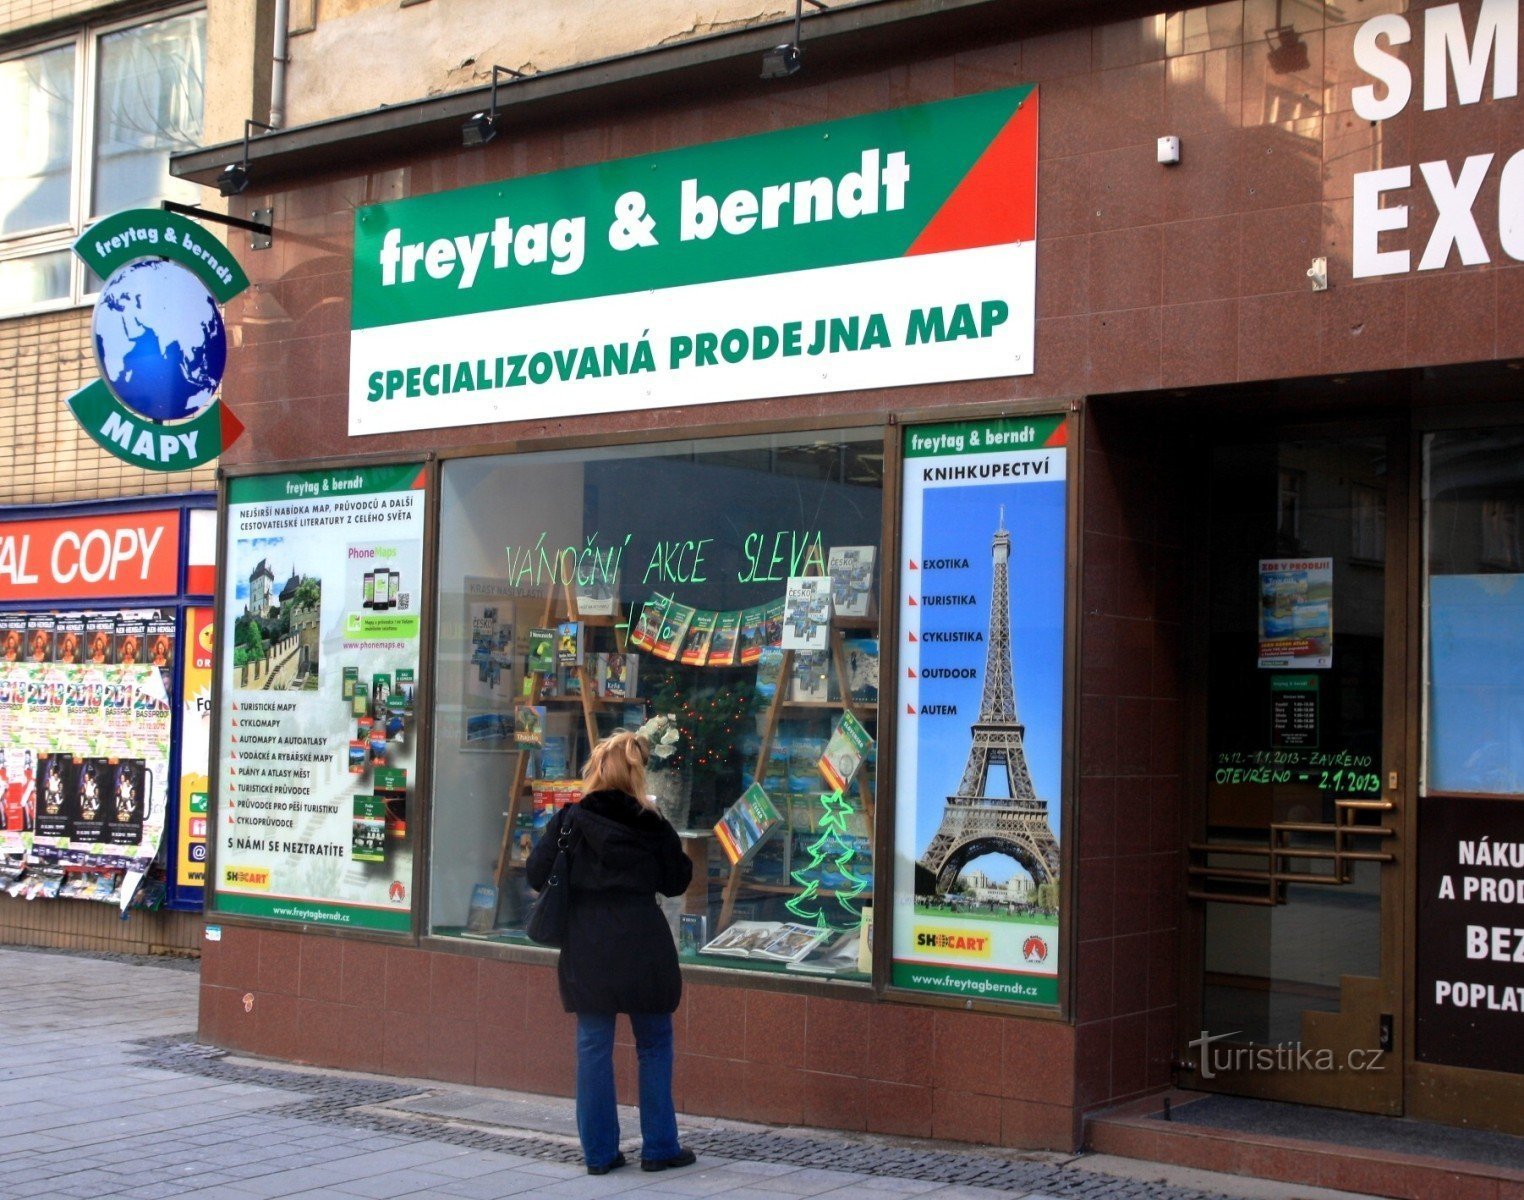 布尔诺 - Kobližná 街上的专业地图店